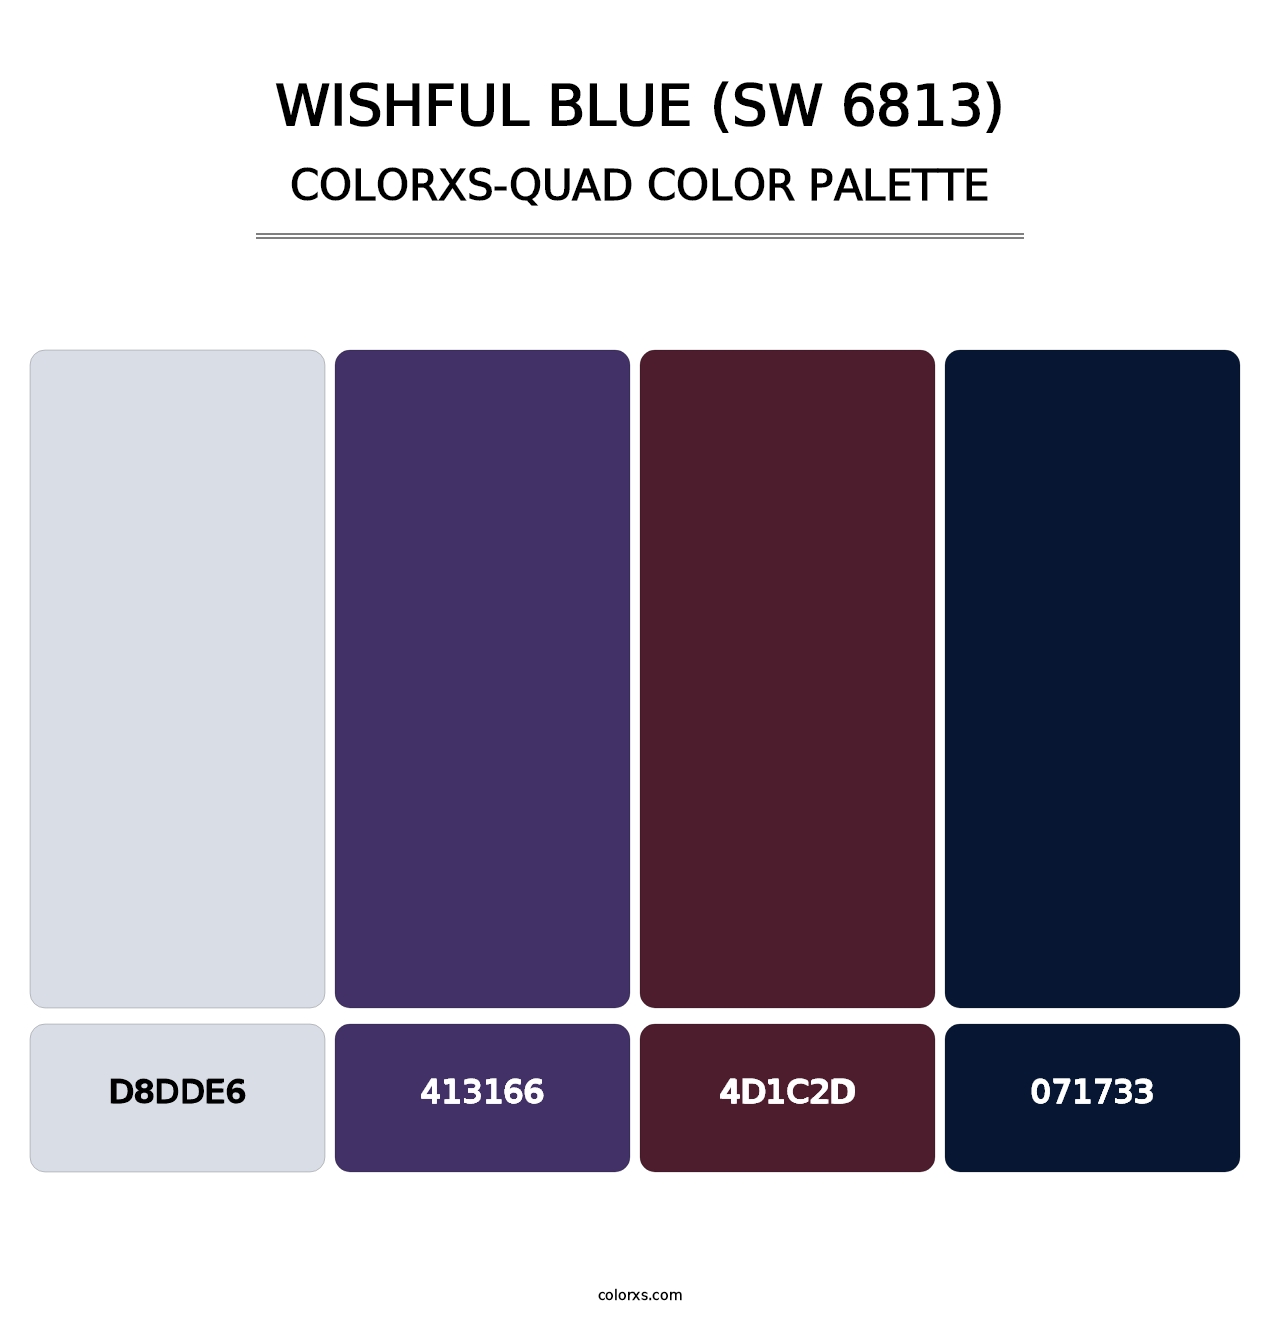 Wishful Blue (SW 6813) - Colorxs Quad Palette